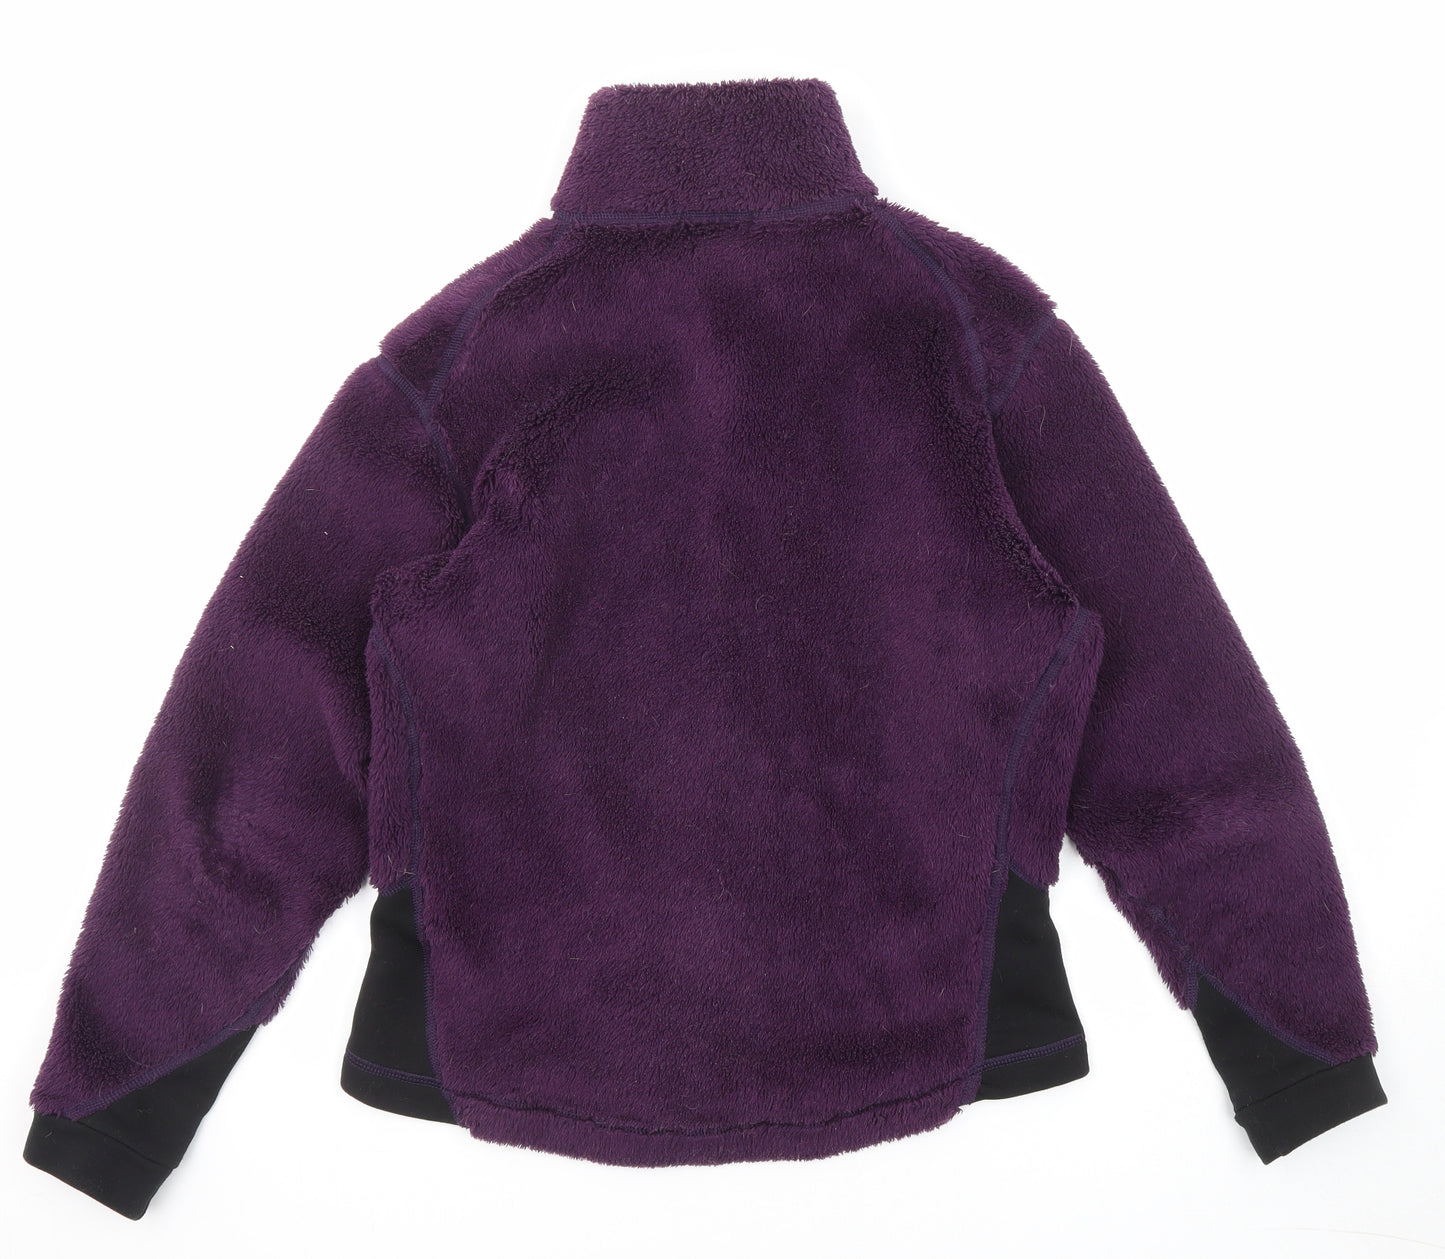 Lowe Alpine Womens Purple Jacket Size S Zip